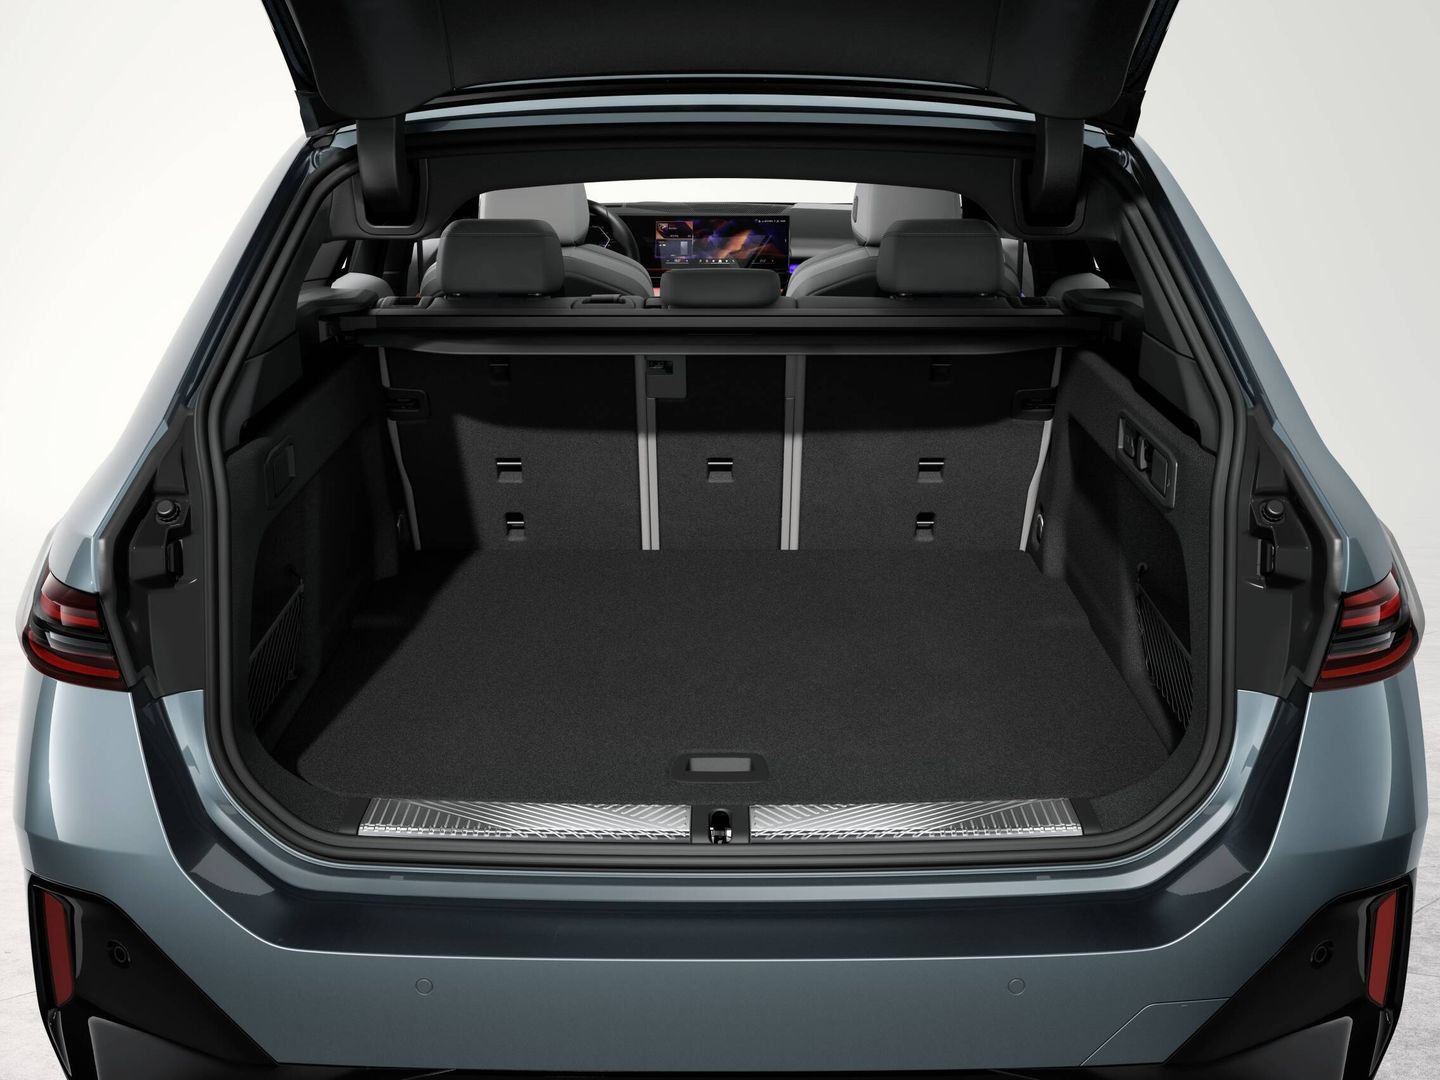 La berlina ofrece 520 litros (490 el i5) de maletero. El Serie 5 Touring cuenta con 570 litros.